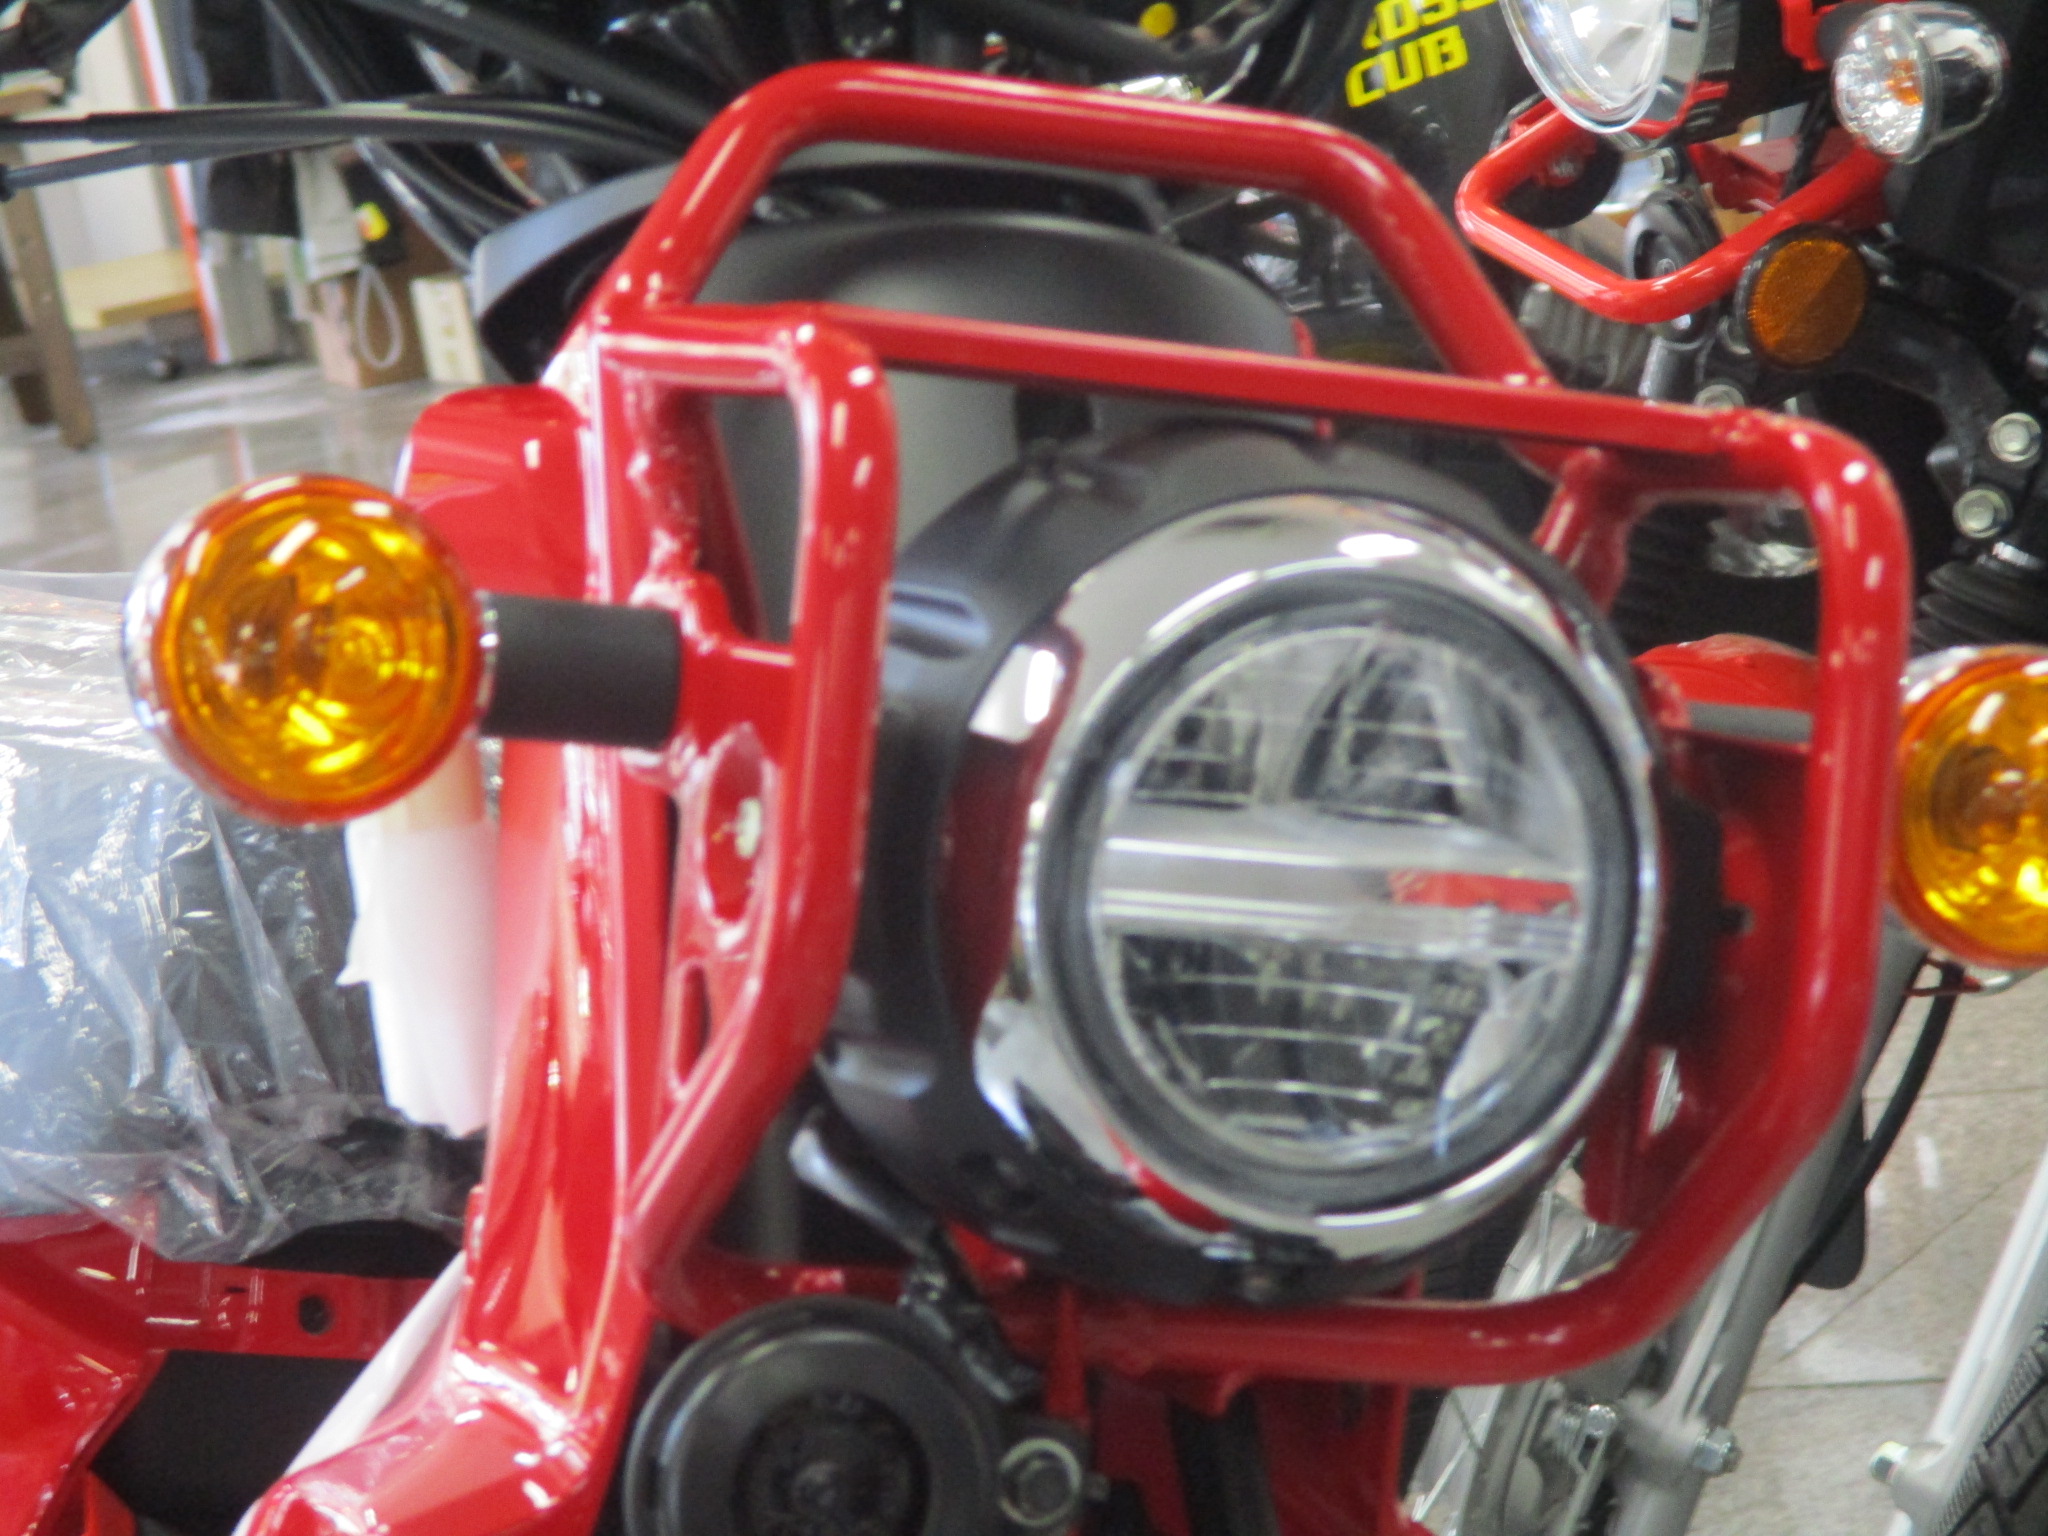 新型クロスカブ入荷しました 最新情報 U Media ユーメディア 中古 バイク 新車バイク探しの決定版 神奈川 東京でバイク探すならユーメディア